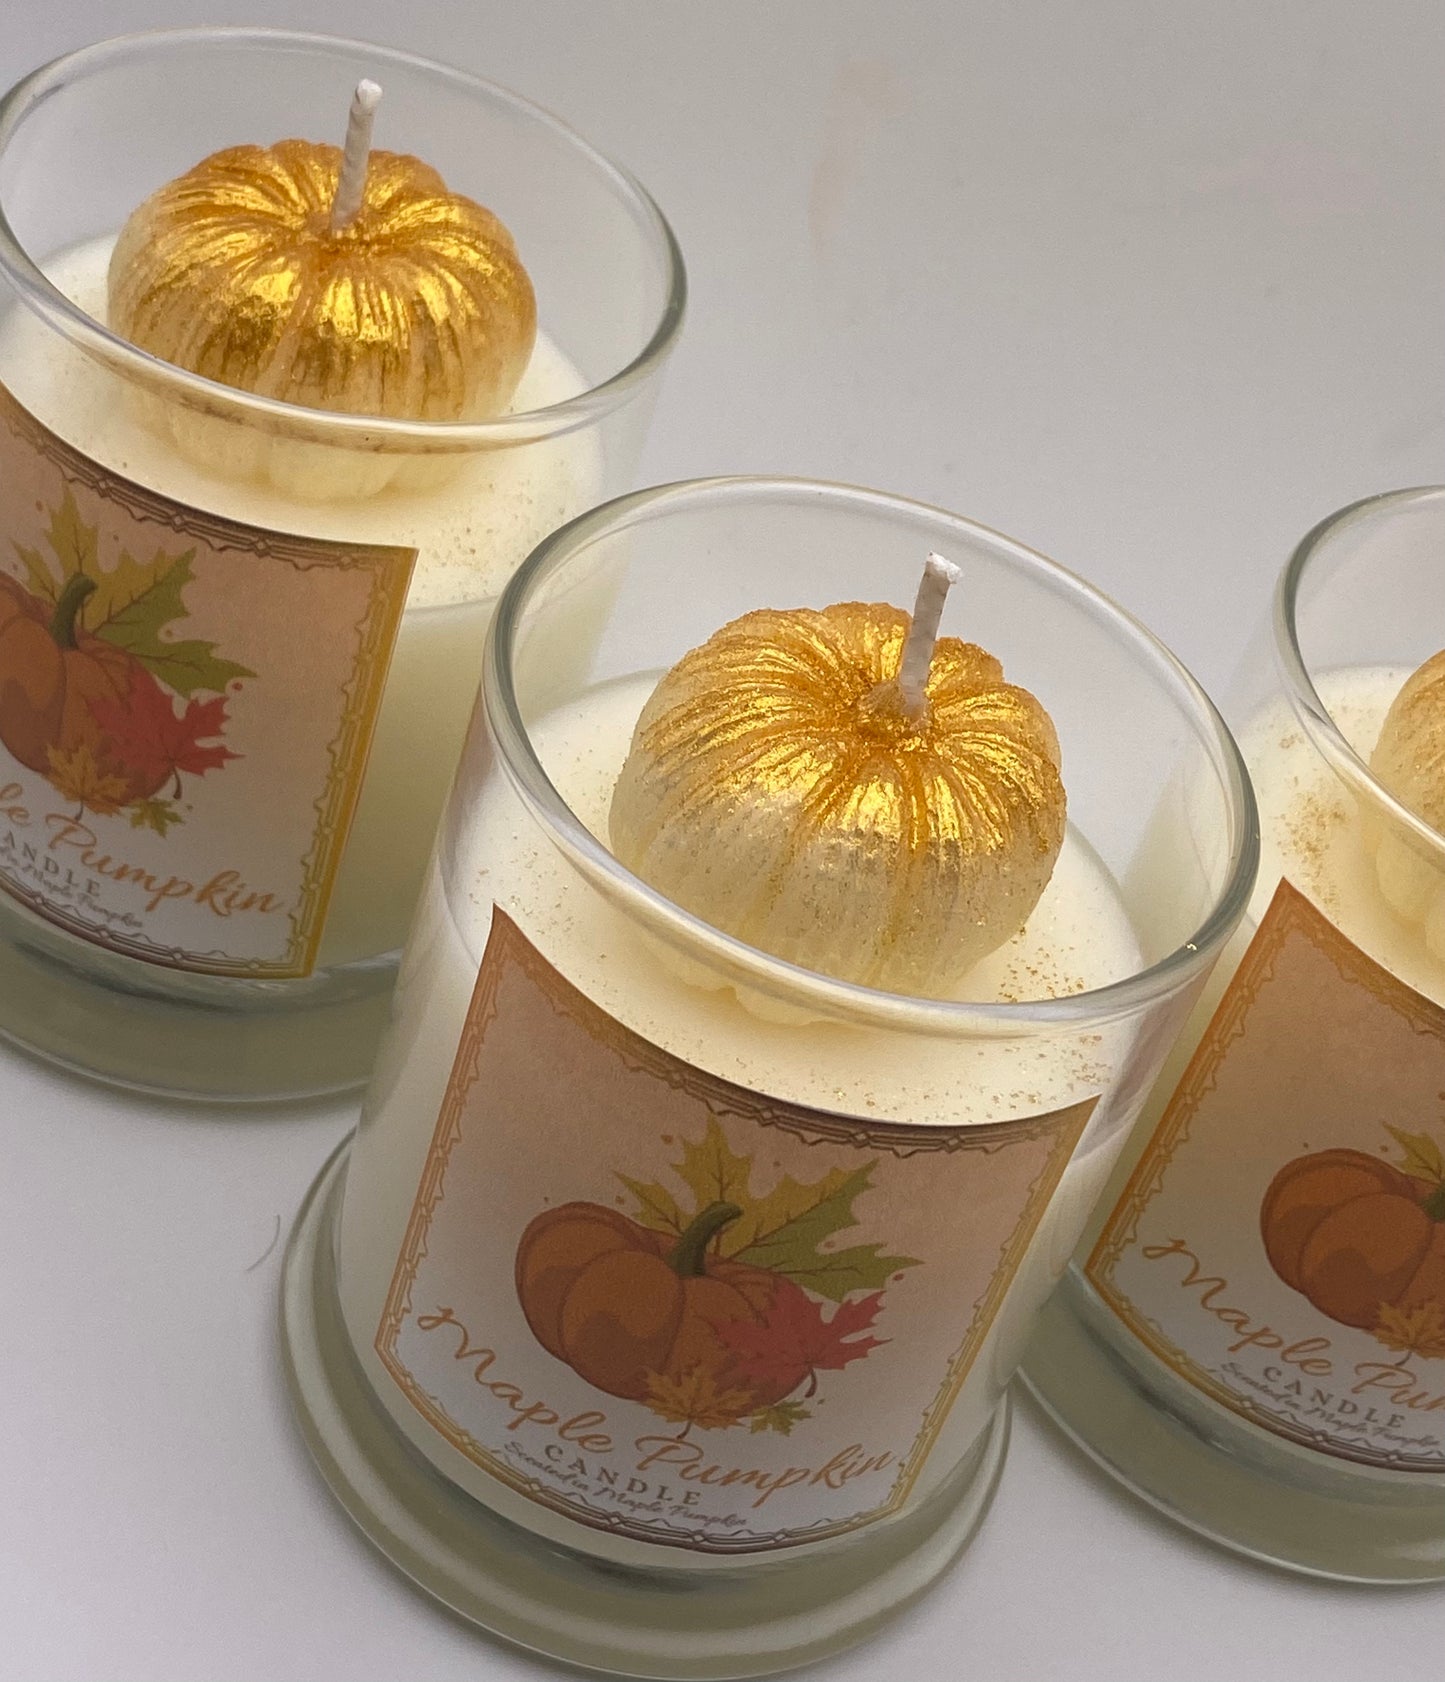 Maple Pumpkin Candles